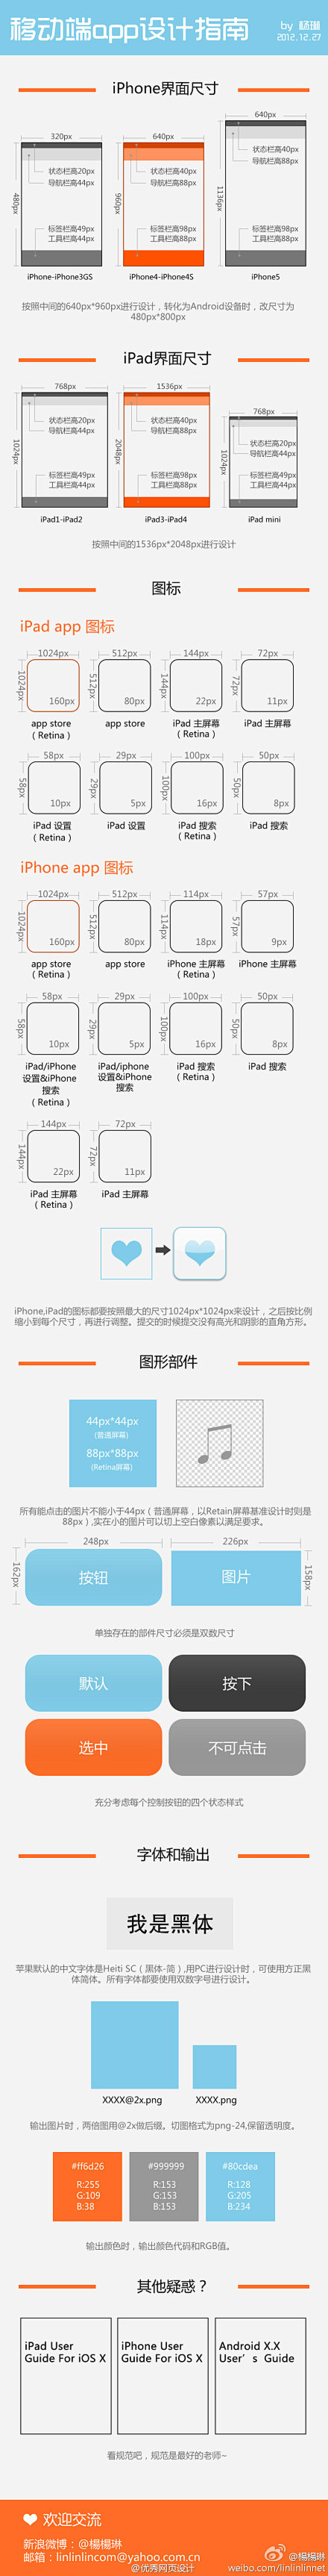 iphone/pad设计尺寸